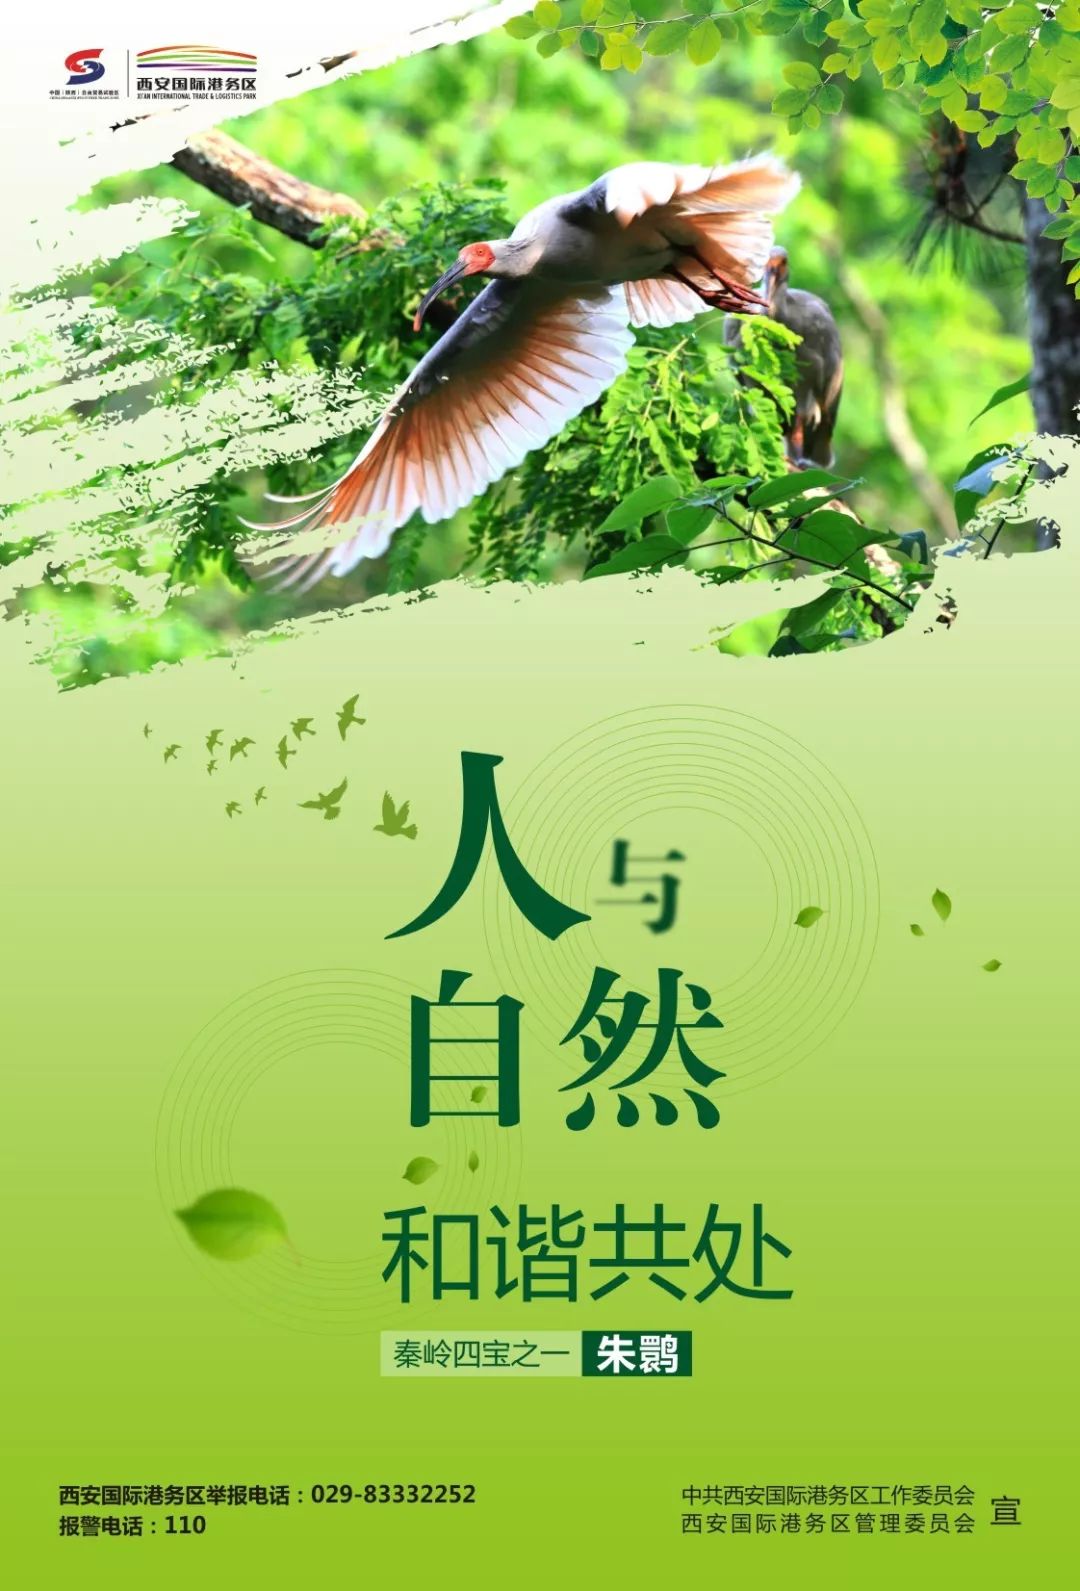 刚刚国际港务区野生动植物保护宣传海报正式发布